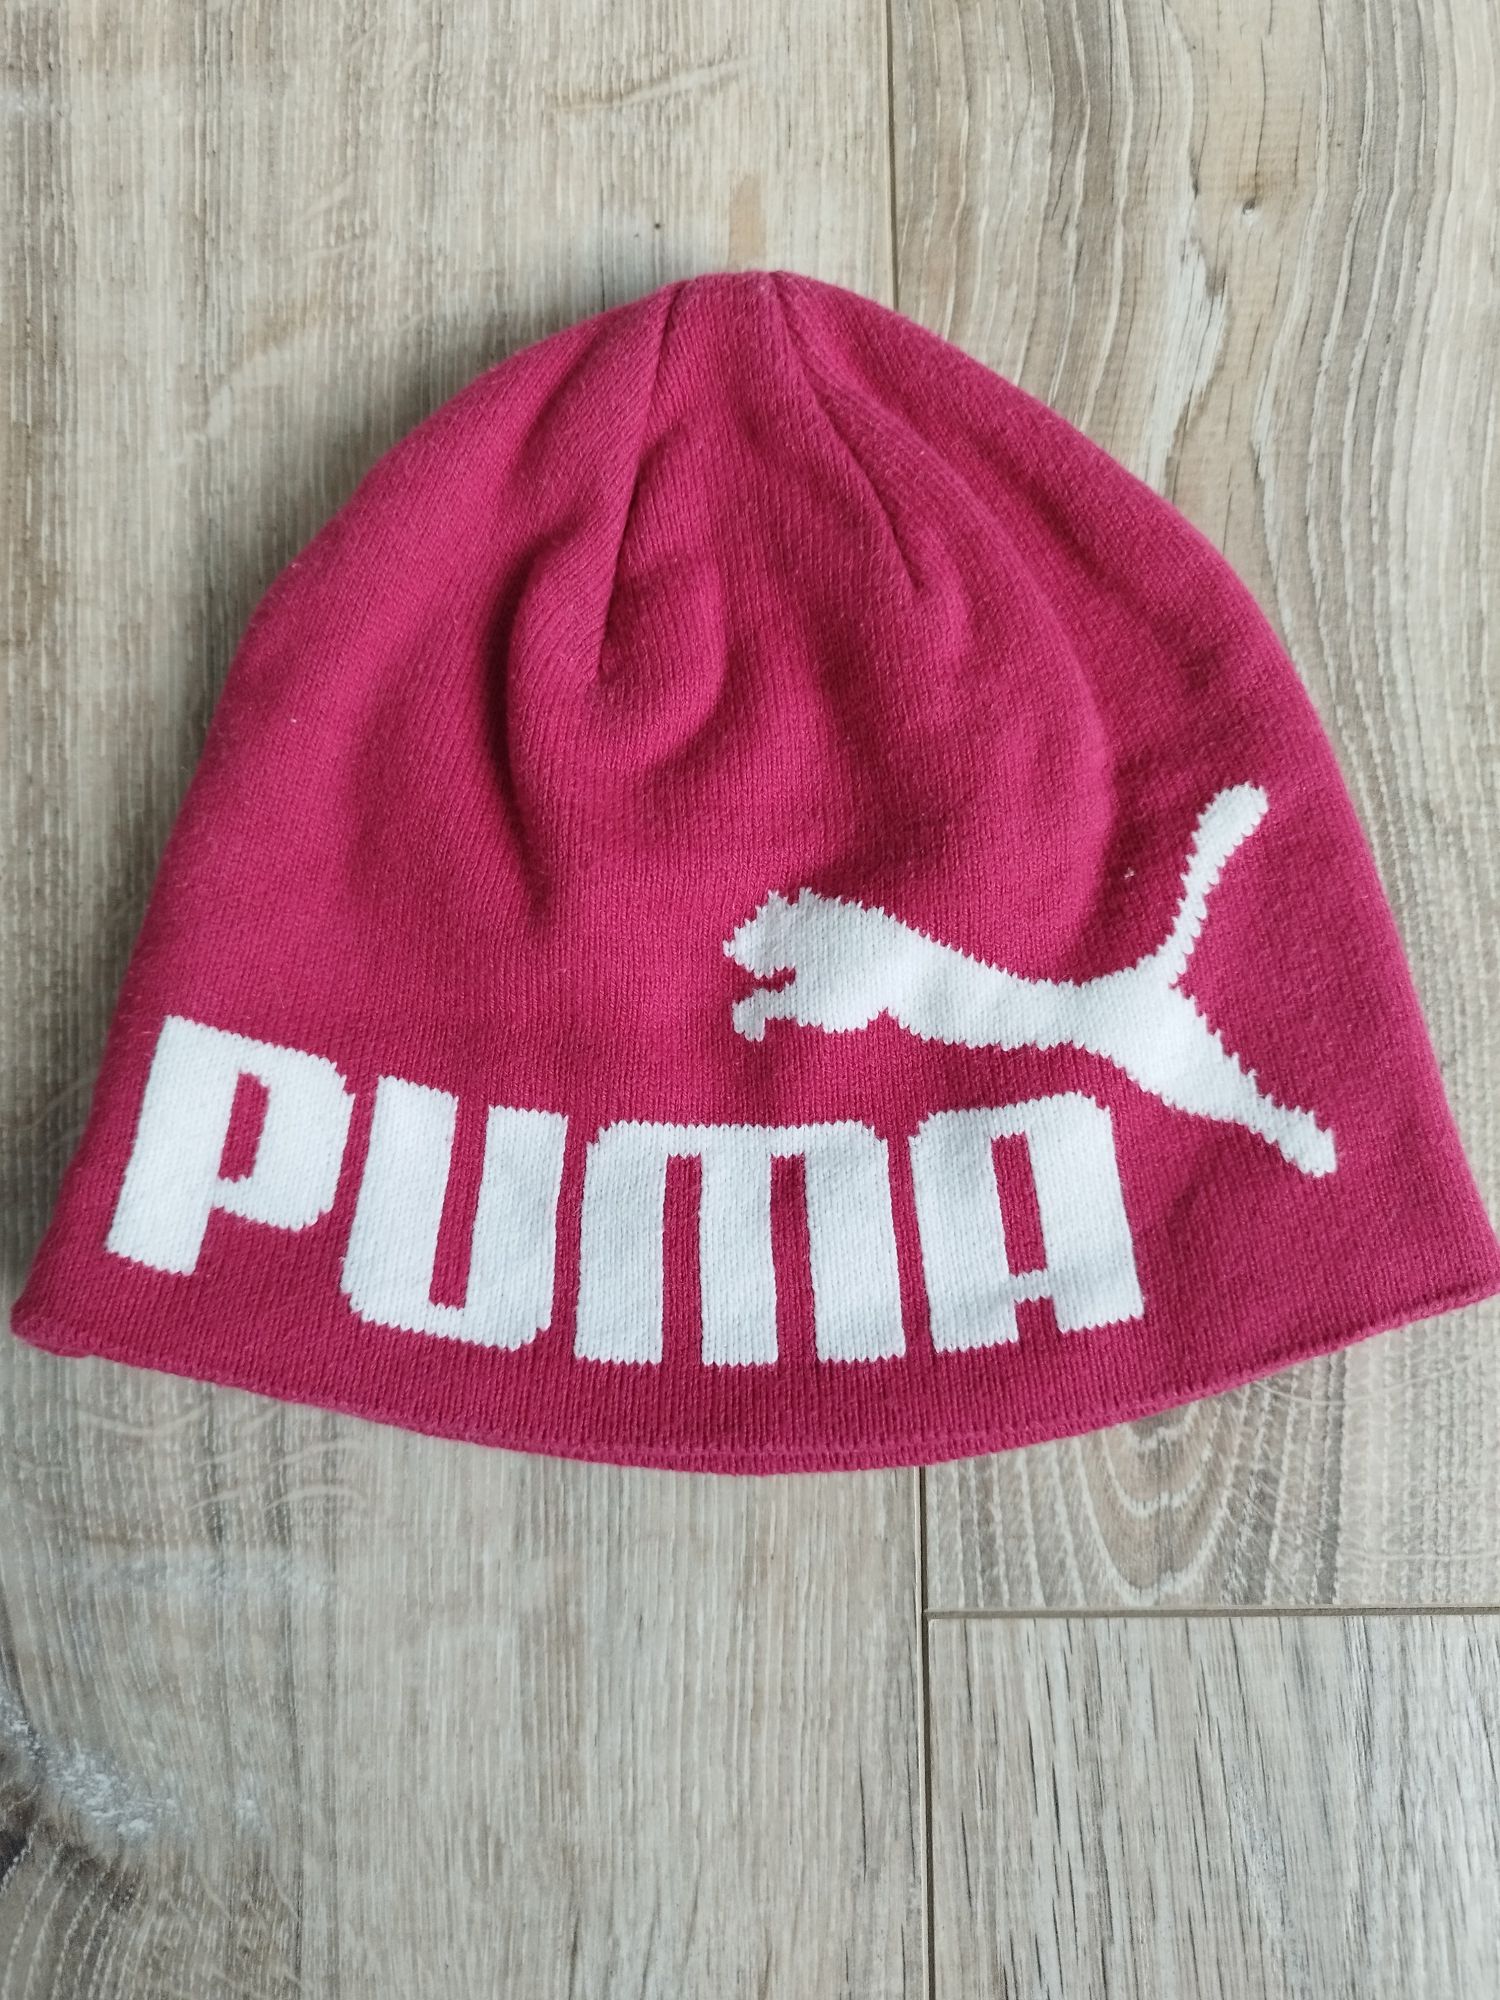 Oryginalna czapka PUMA dla dzieci firmowa chłopięca / dziewczęca